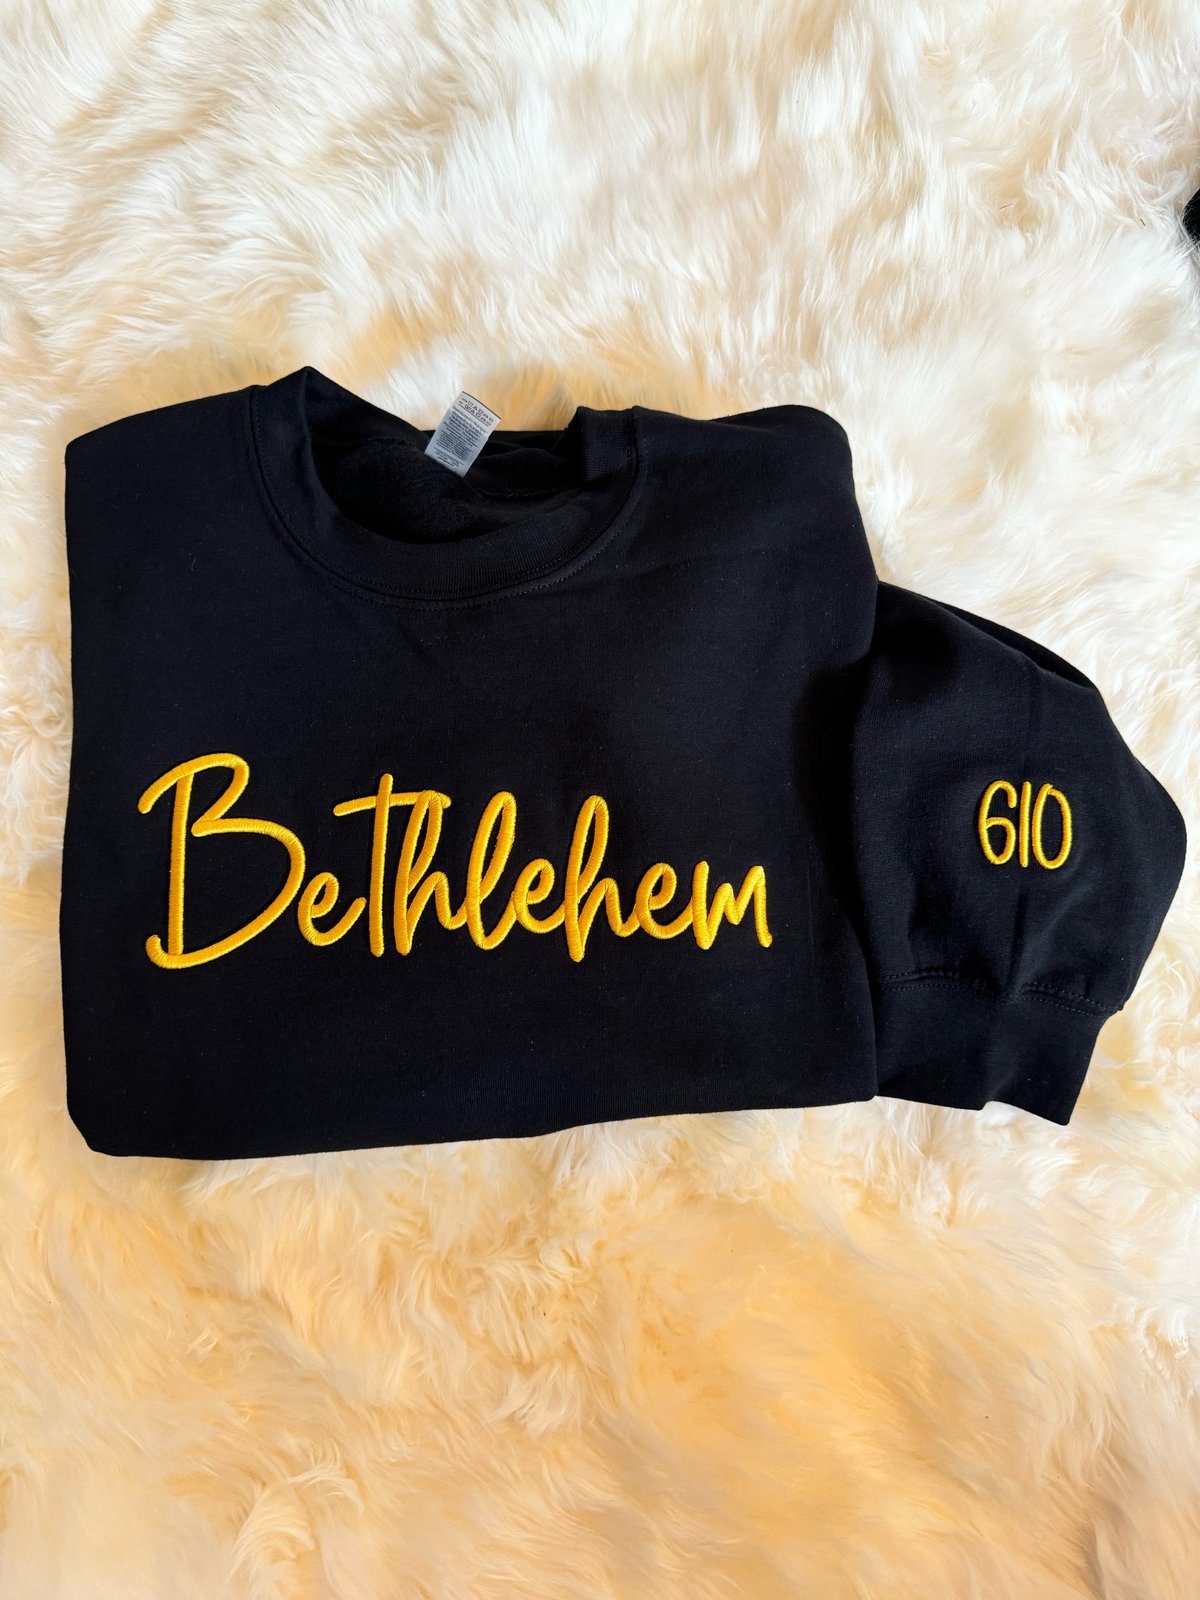 Image of Bethlehem 610 Black